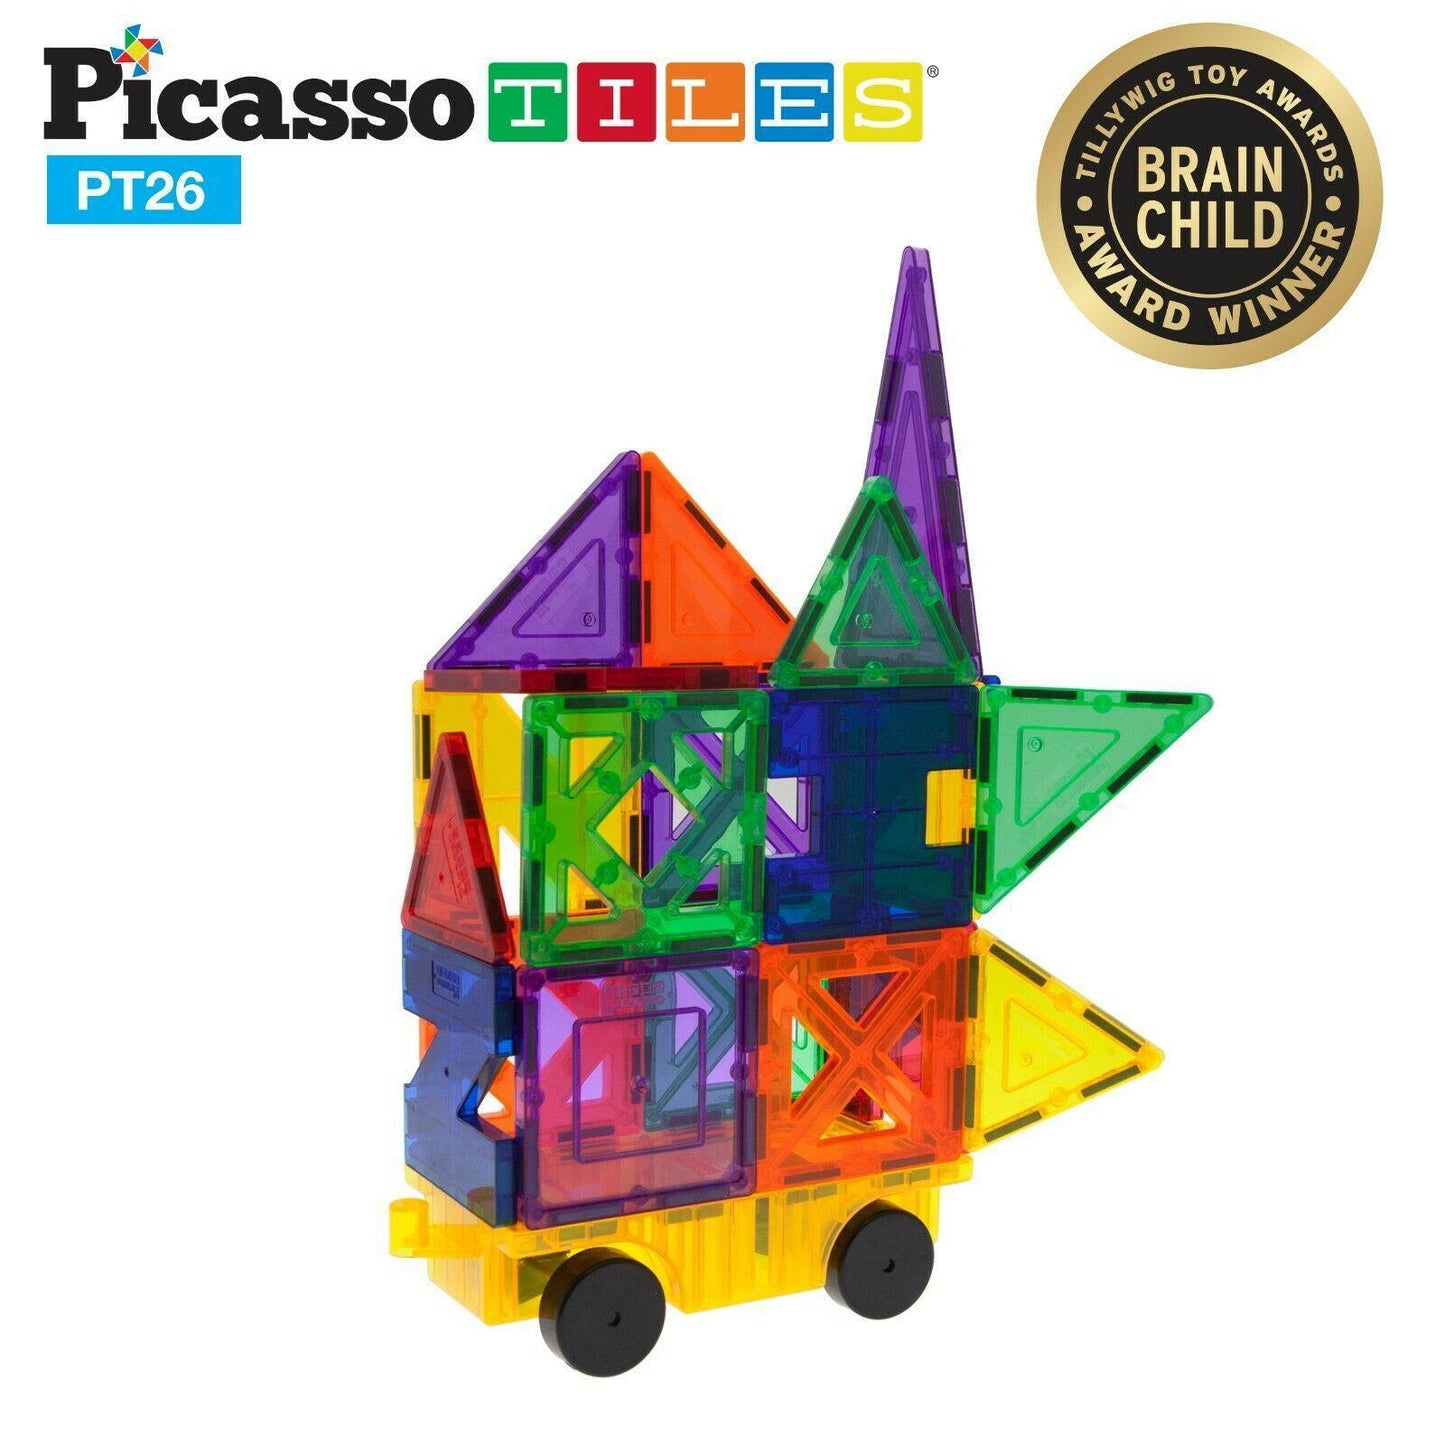 Picasso Tiles 26 Piece Educational Magnet Building Tiles 9 Different Shapes